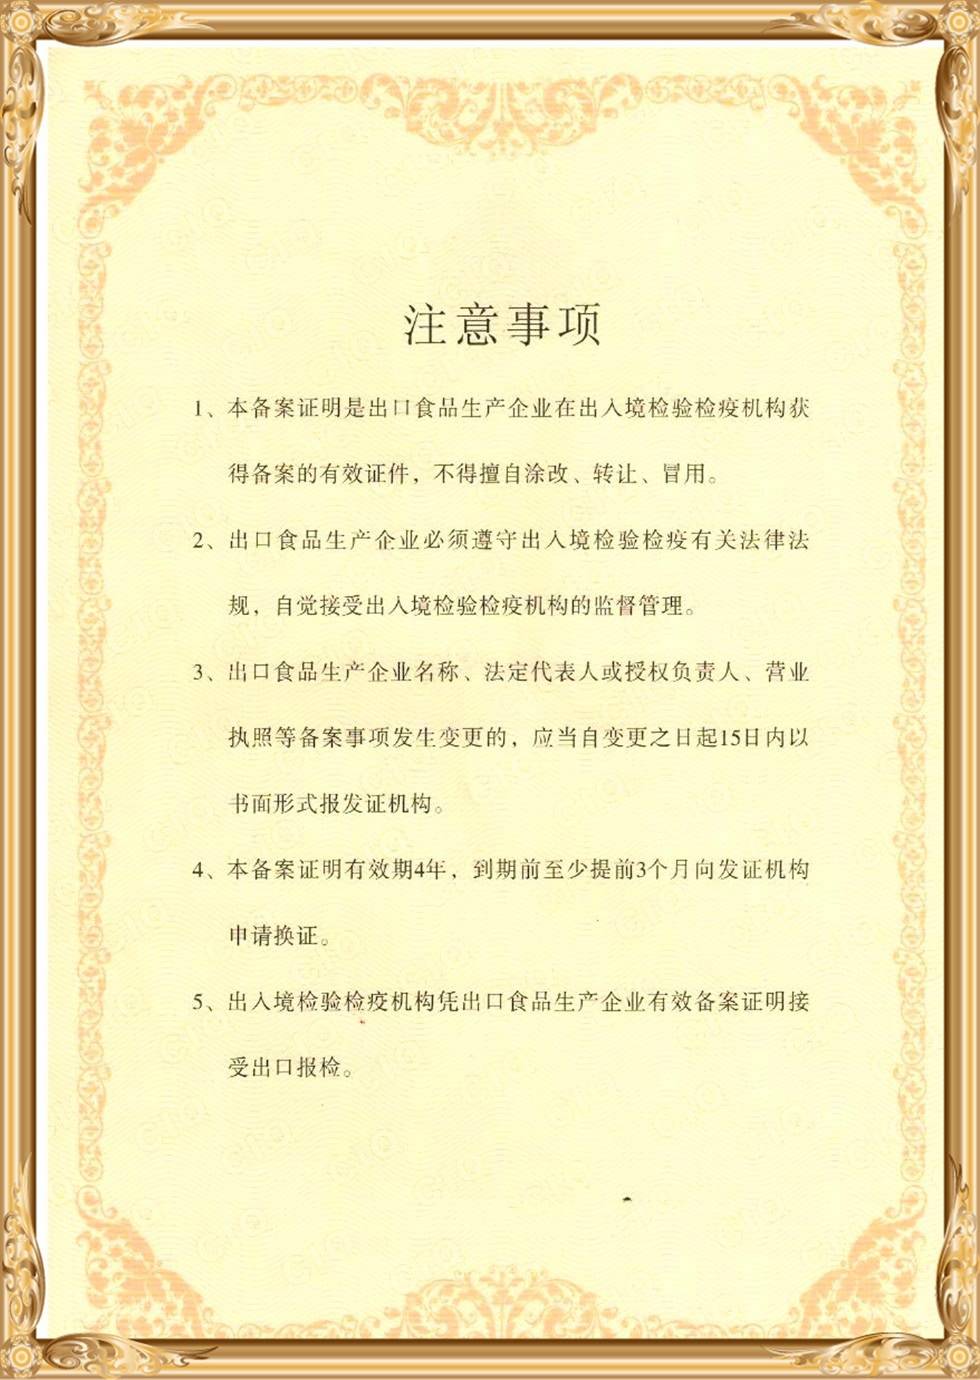 Paparan sijil